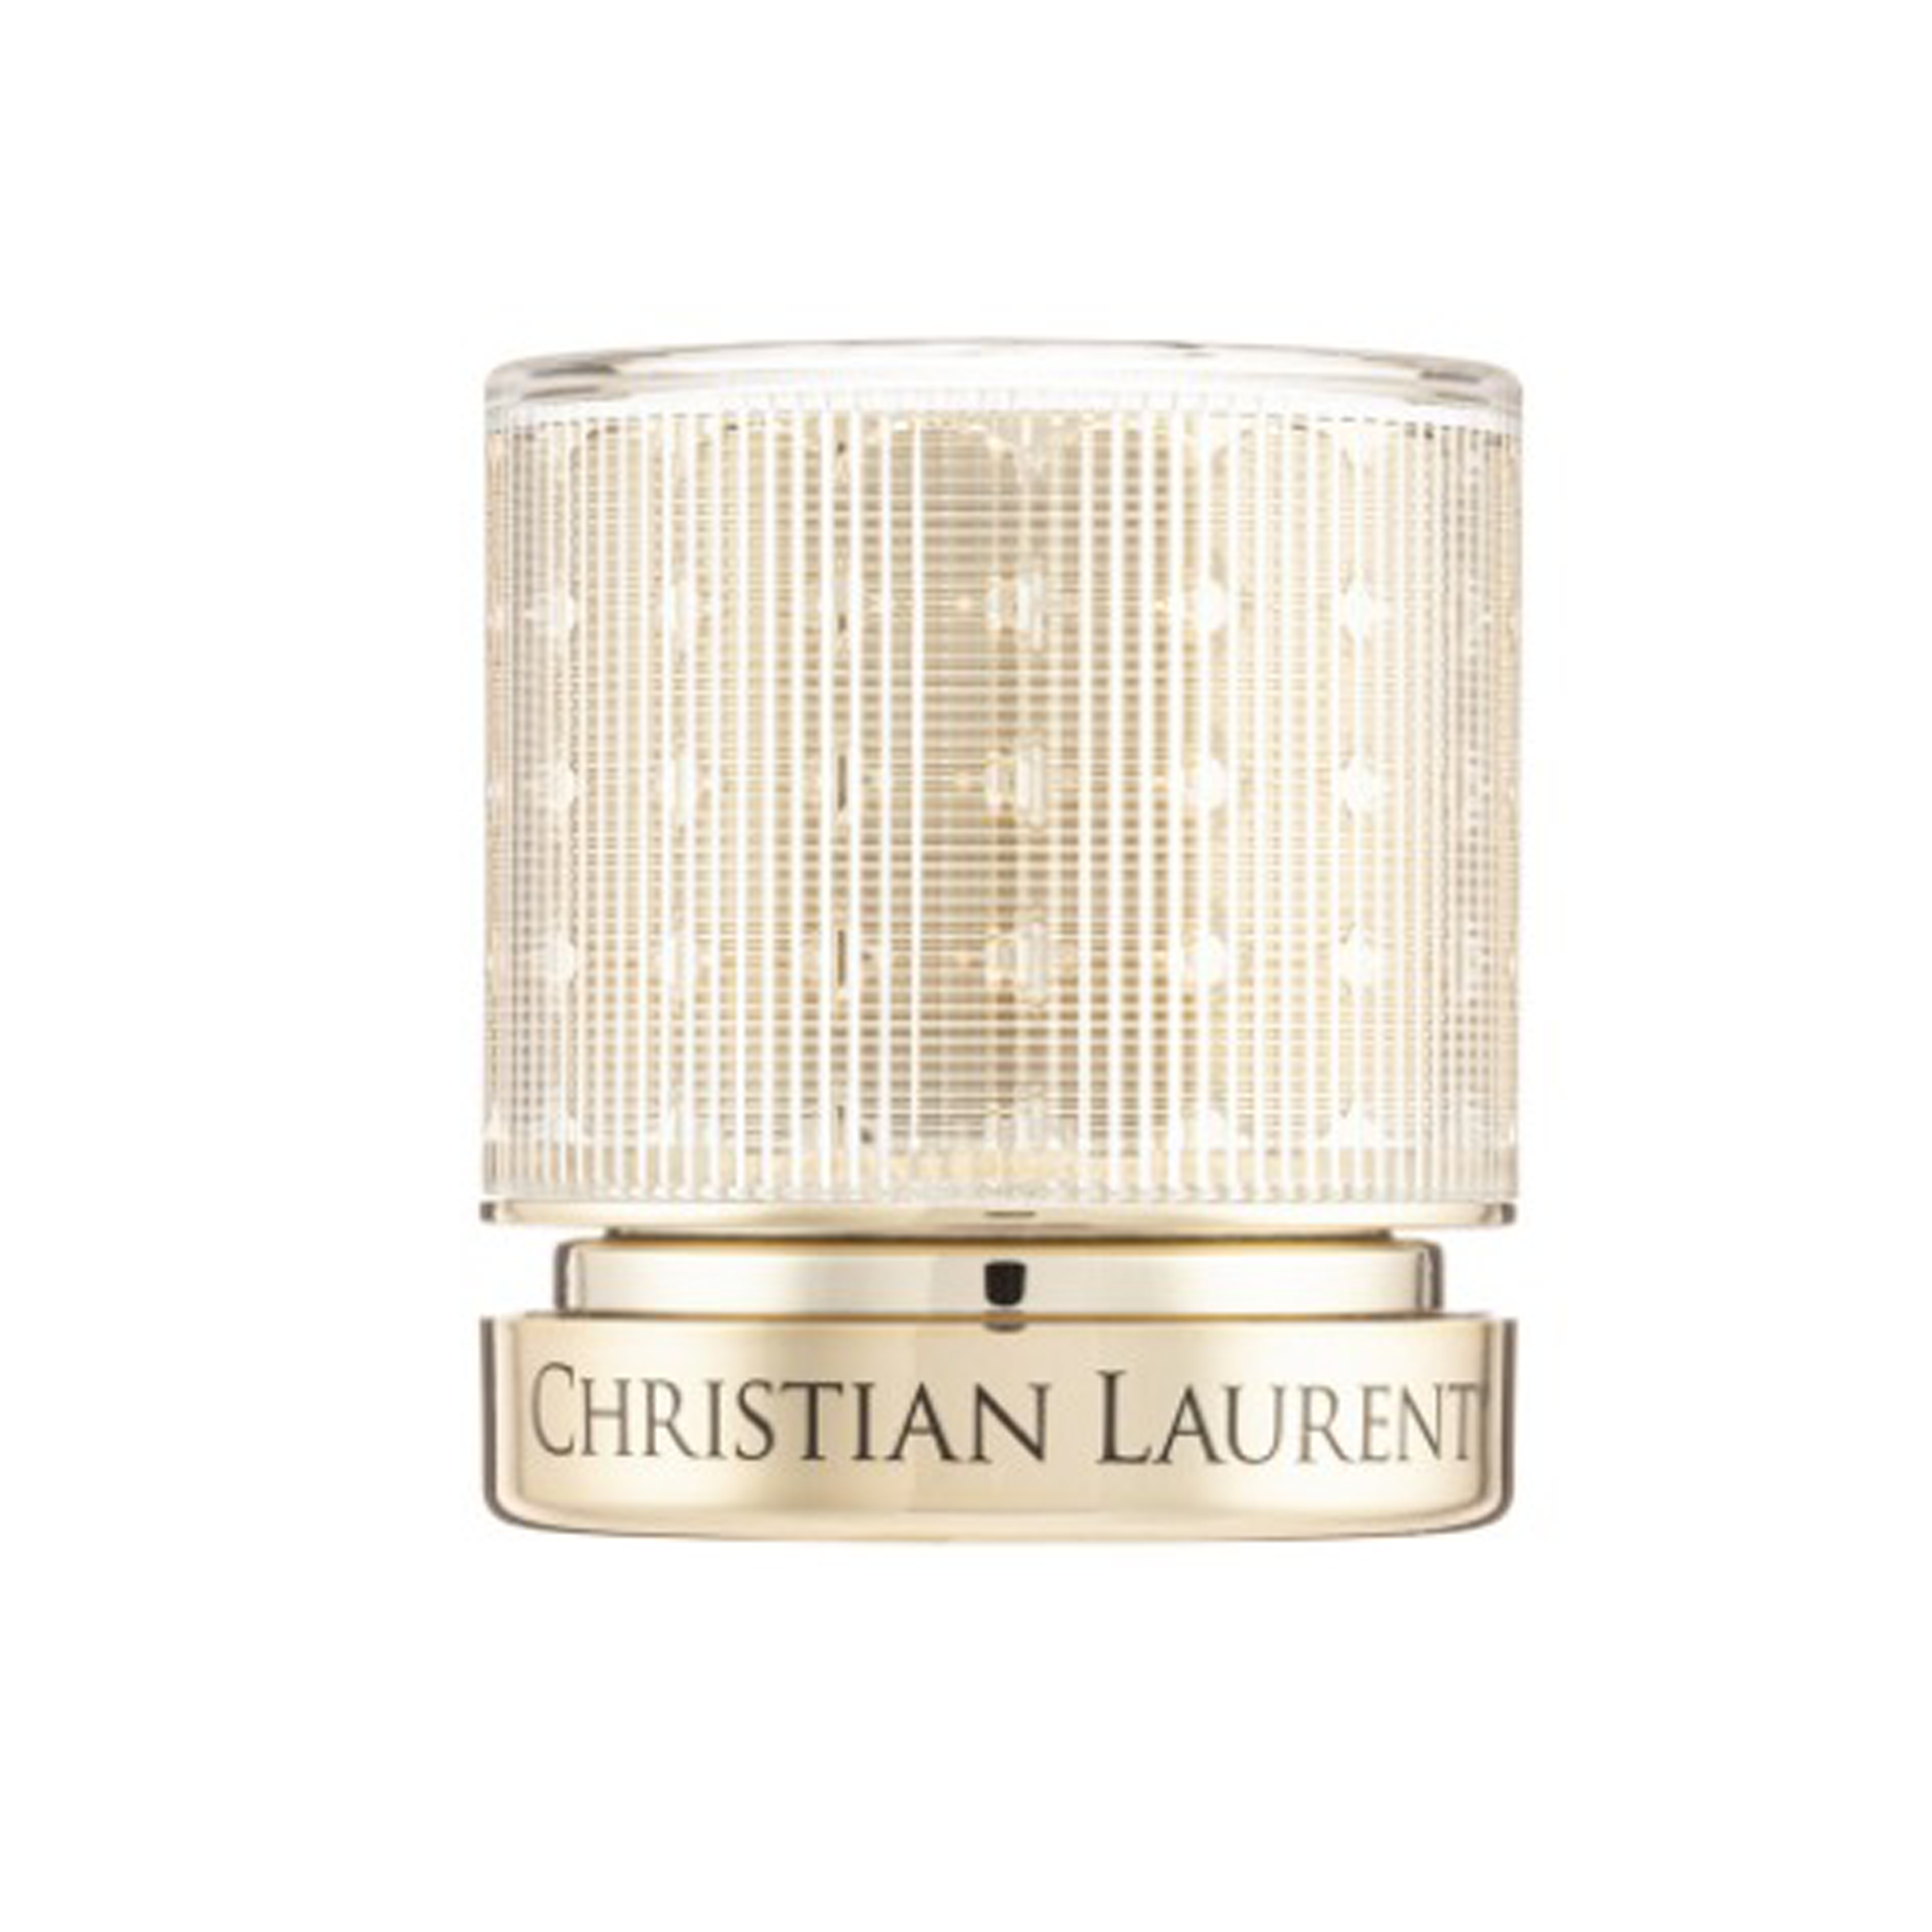 Kem tinh chất vàng 24k Christian Laurent Luxury Diamond Cream chống lão hóa, sáng da - Hũ 50ml